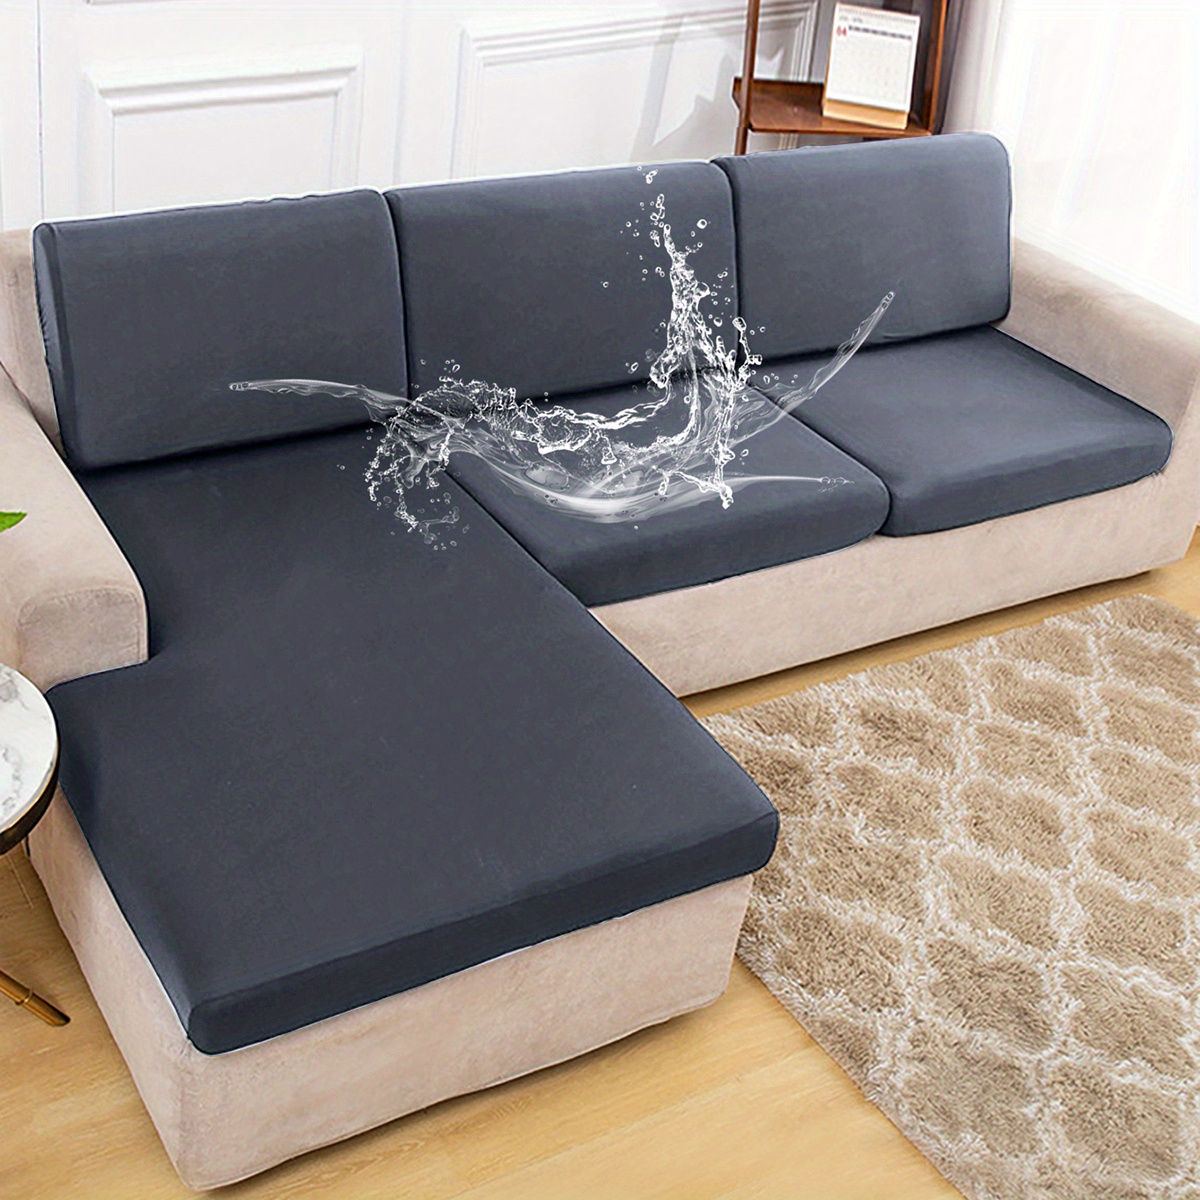  Funda impermeable elástica para sofá, funda de asiento lavable  de sofá, protector de muebles no deslizante, con múltiples fundas de sofá  con lazo, fundas de sofá para el hogar en interiores